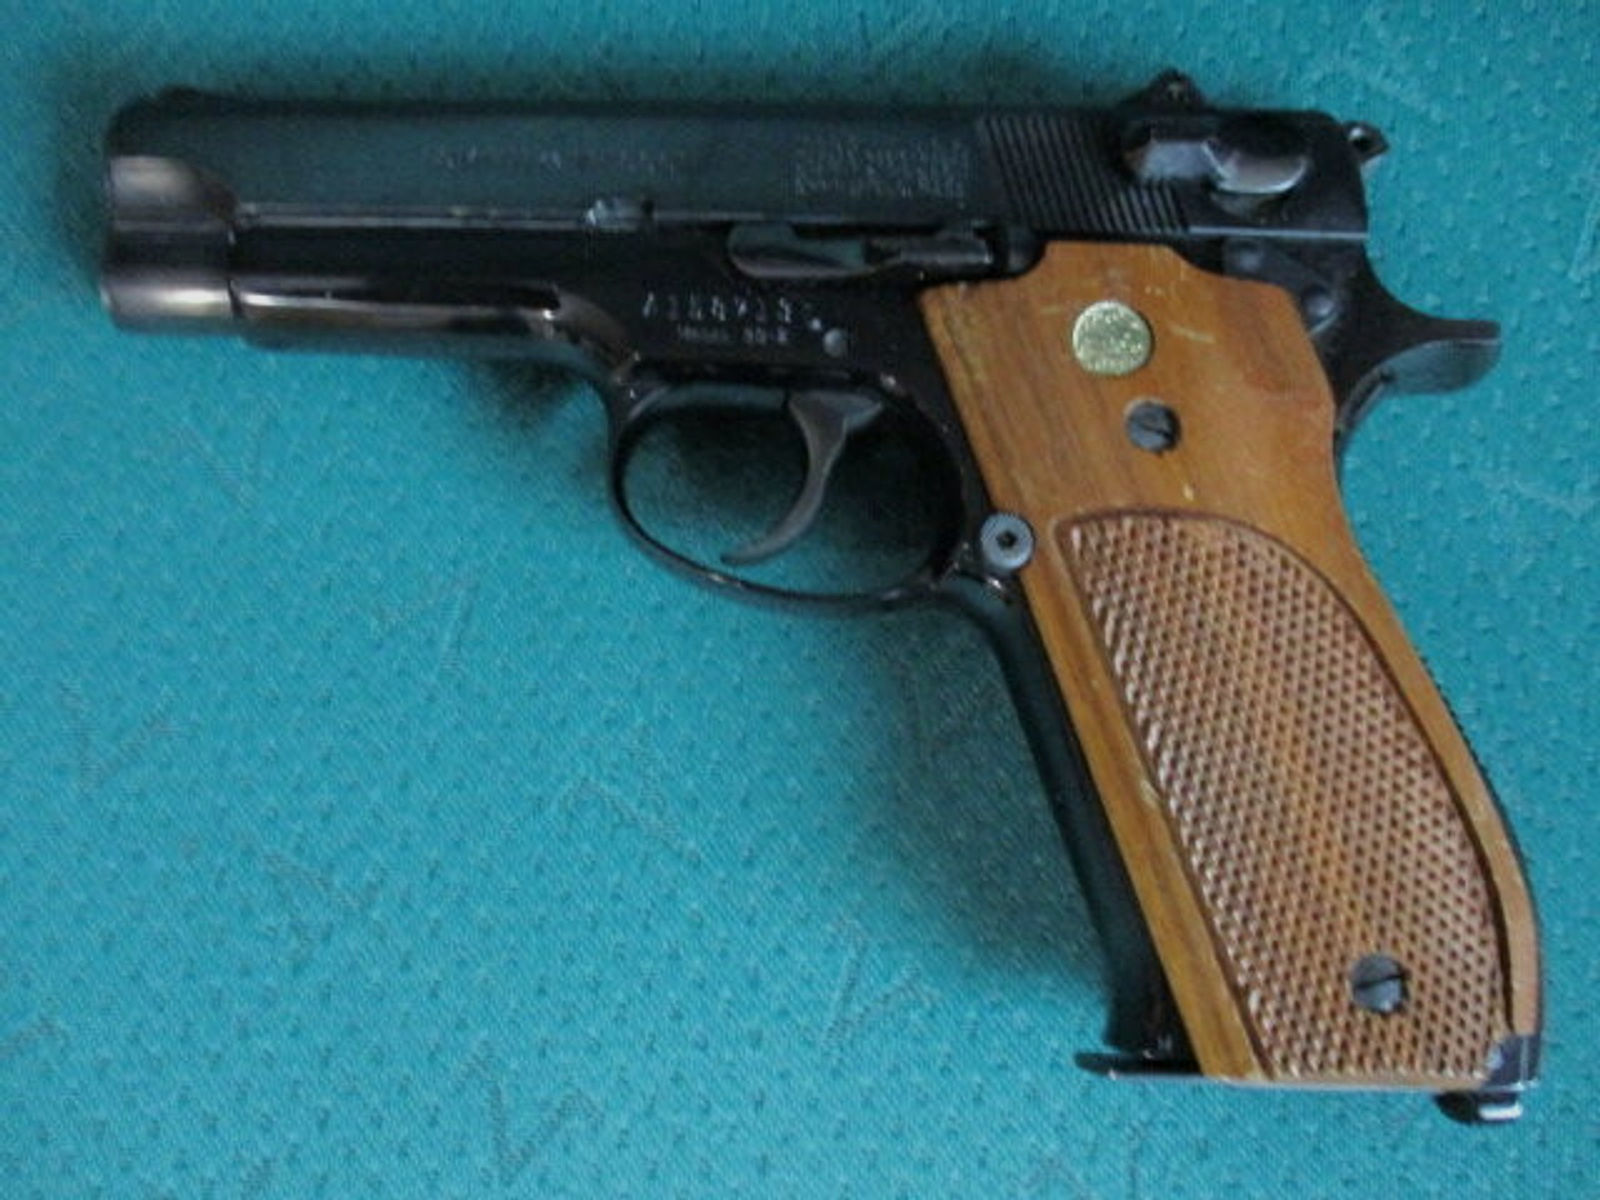 Pistole 9mm Luger Smith & Wesson Mod. 39 mit verstellbarer Visierung	 39